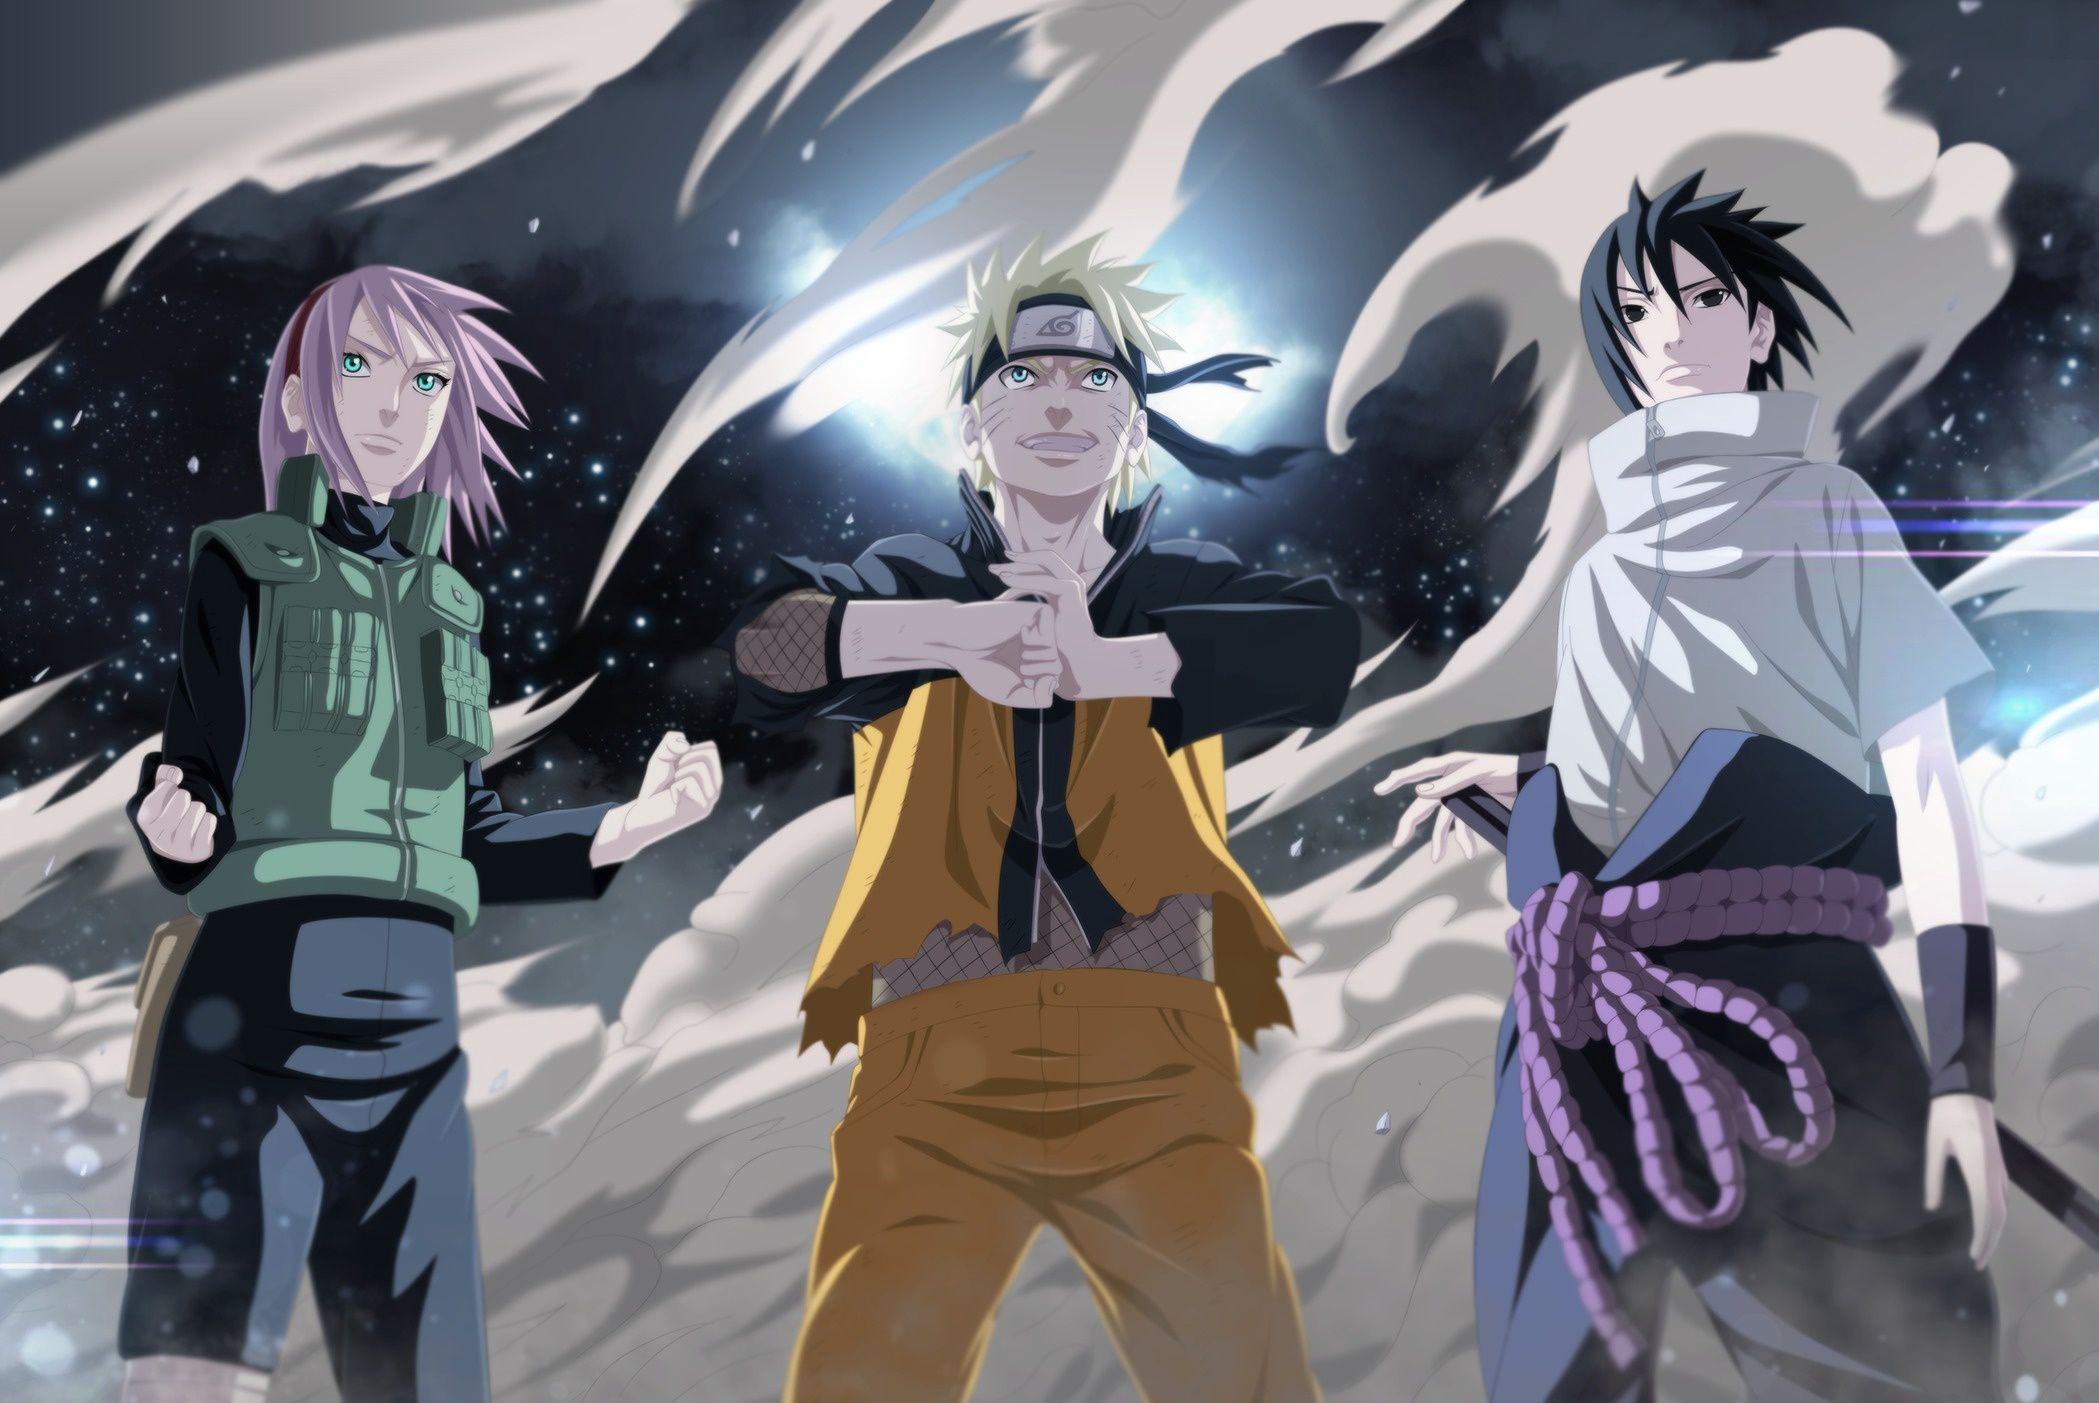 Naruto Sannin: Xem những hình ảnh cực kỳ ấn tượng của 3 nữ ninja tuyệt vời huyền thoại này. Sự sắc nét, tươi sáng và đậm chất màu sắc sẽ khiến các fan của Naruto cực kỳ phấn khích và hứng thú.